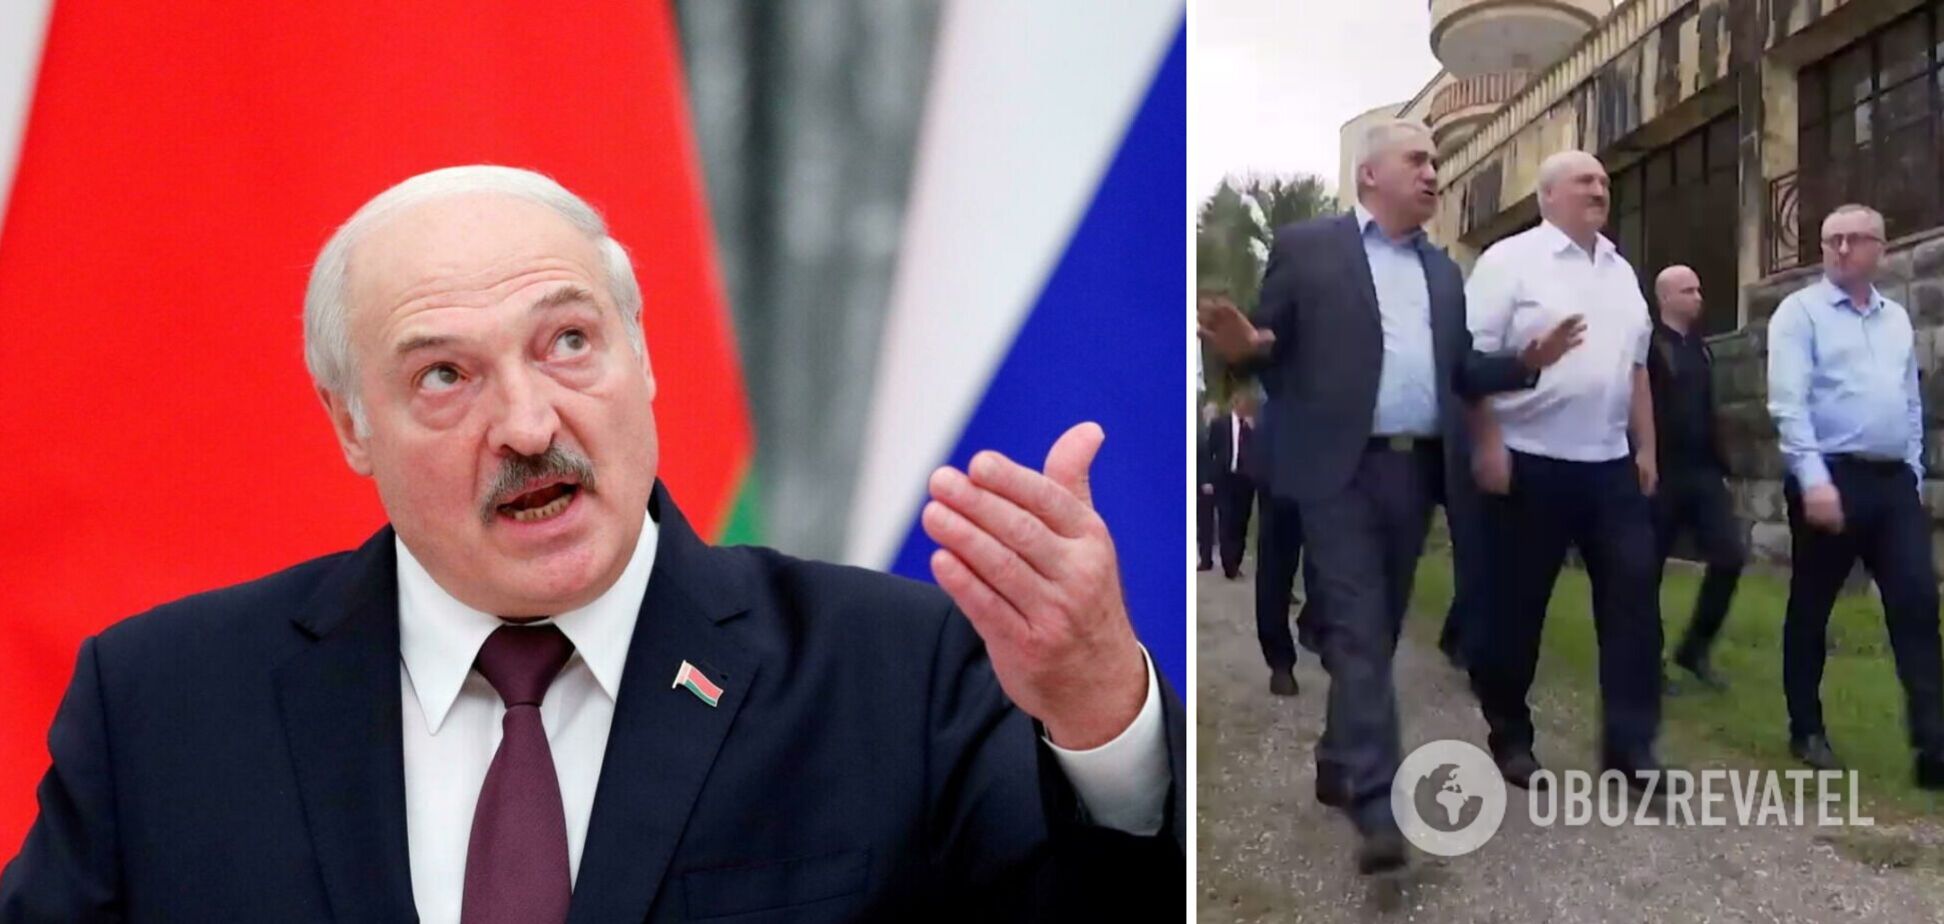 Лукашенко визнав незалежність самопроголошеної Абхазії своїм візитом у Піцунду: в Грузії зажадали пояснень  